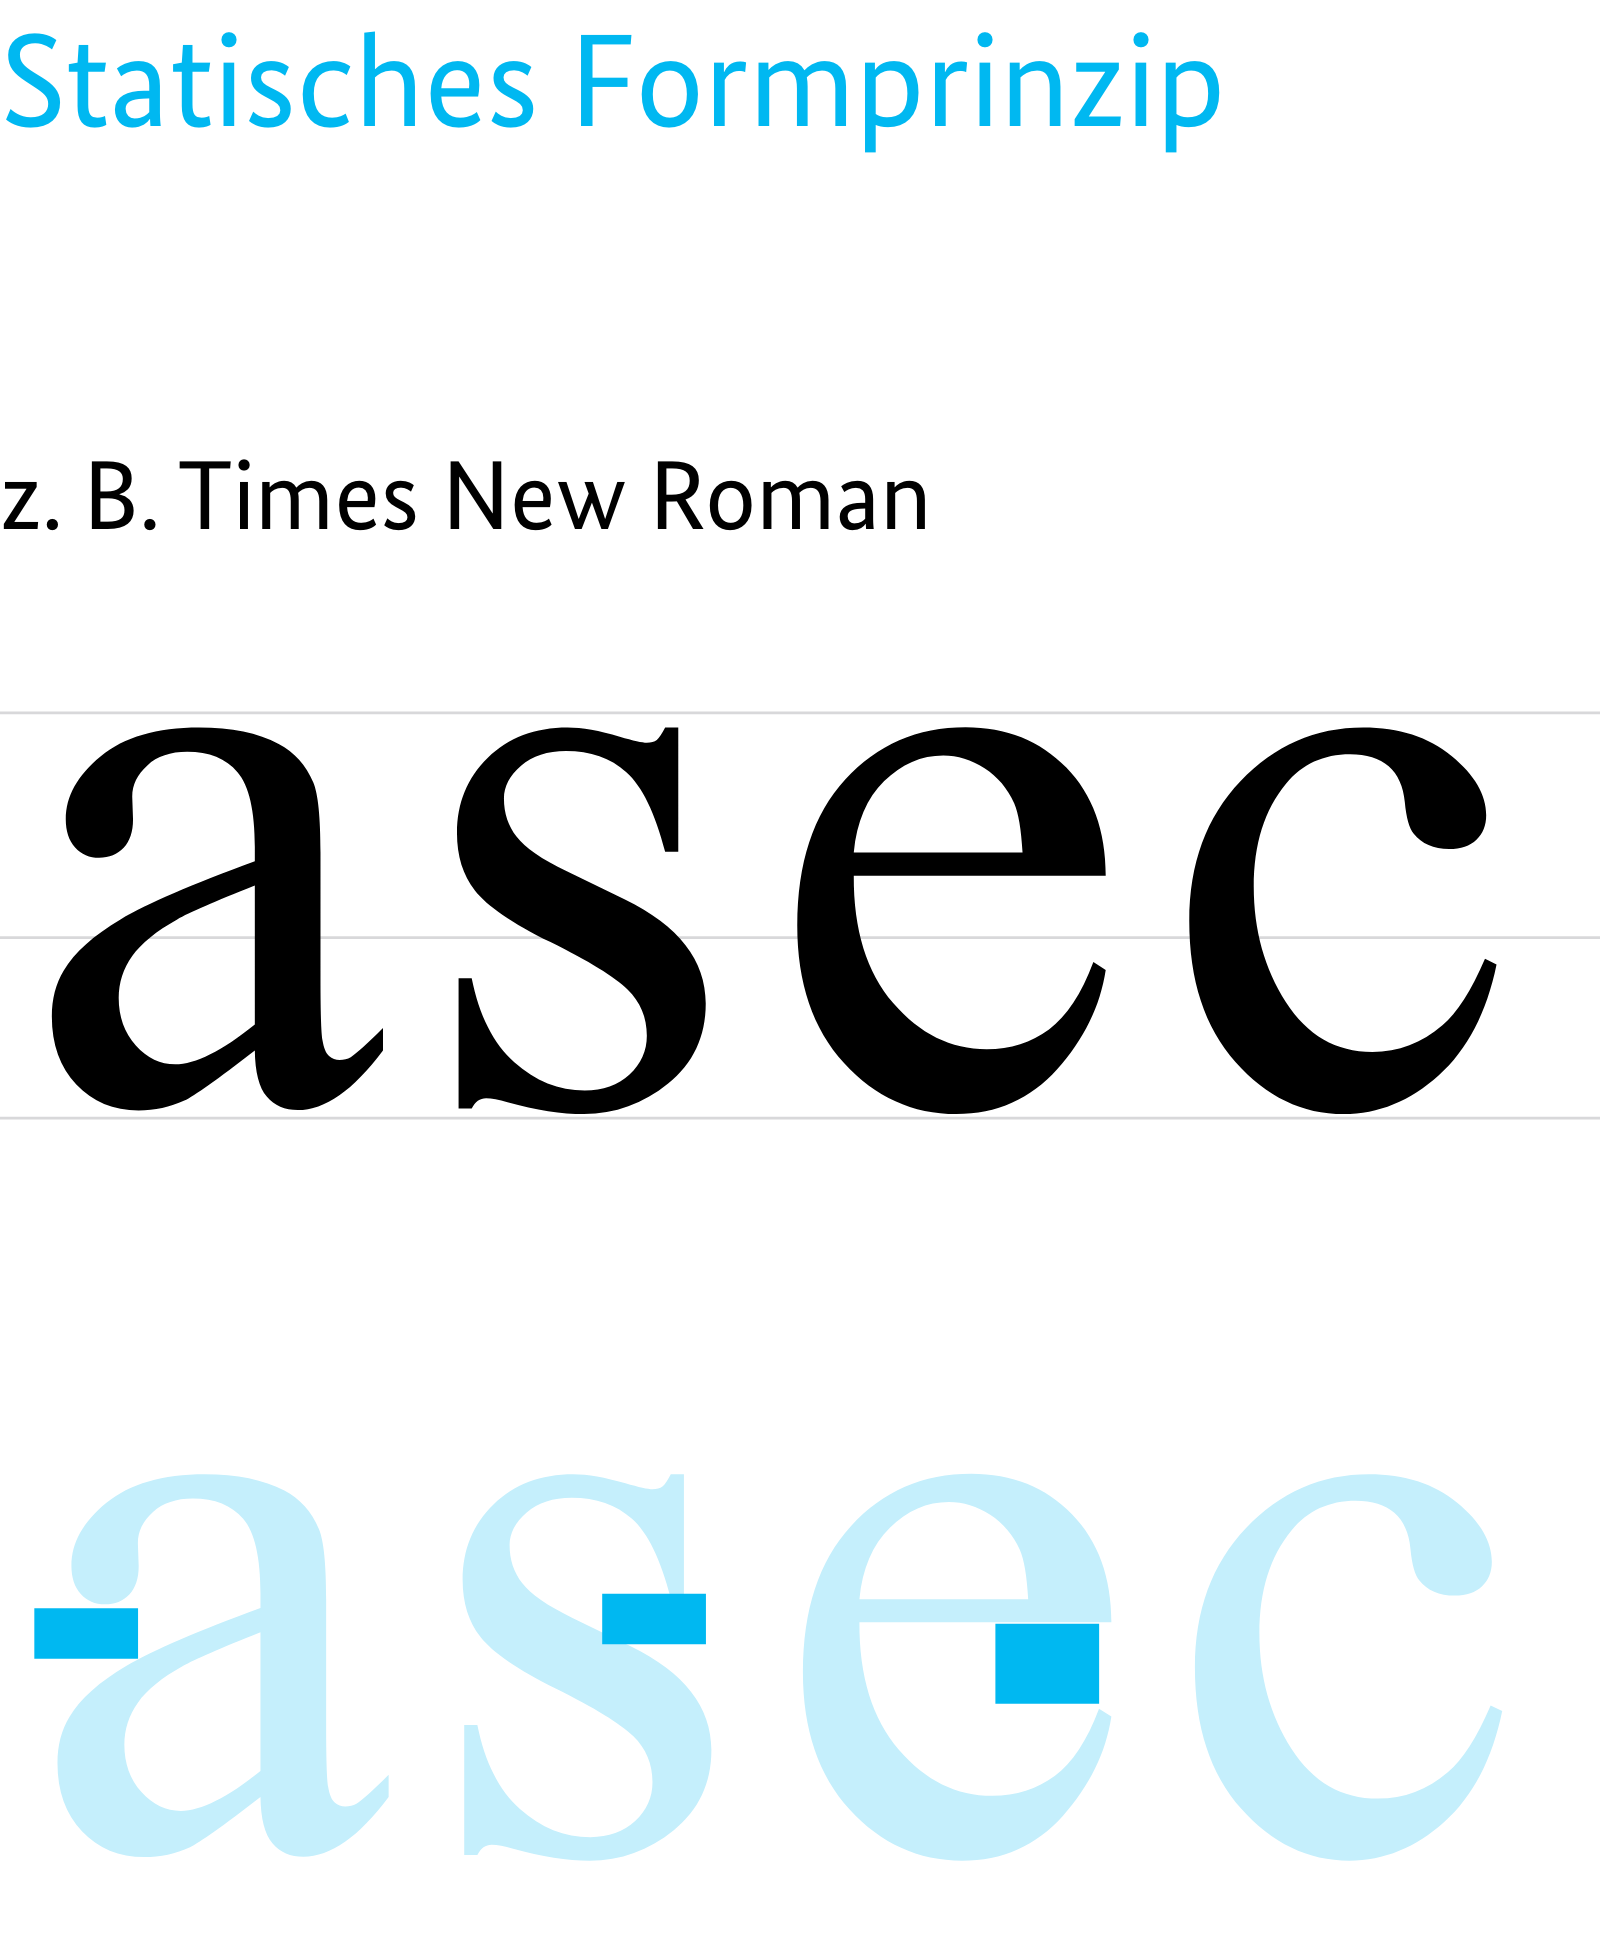 Statisches Formprinzip am Beispiel der Times New Roman. Markierung der Buchstabenbereiche, die geschlossener sind am Beispiel der Buchstaben a,s,e,c.